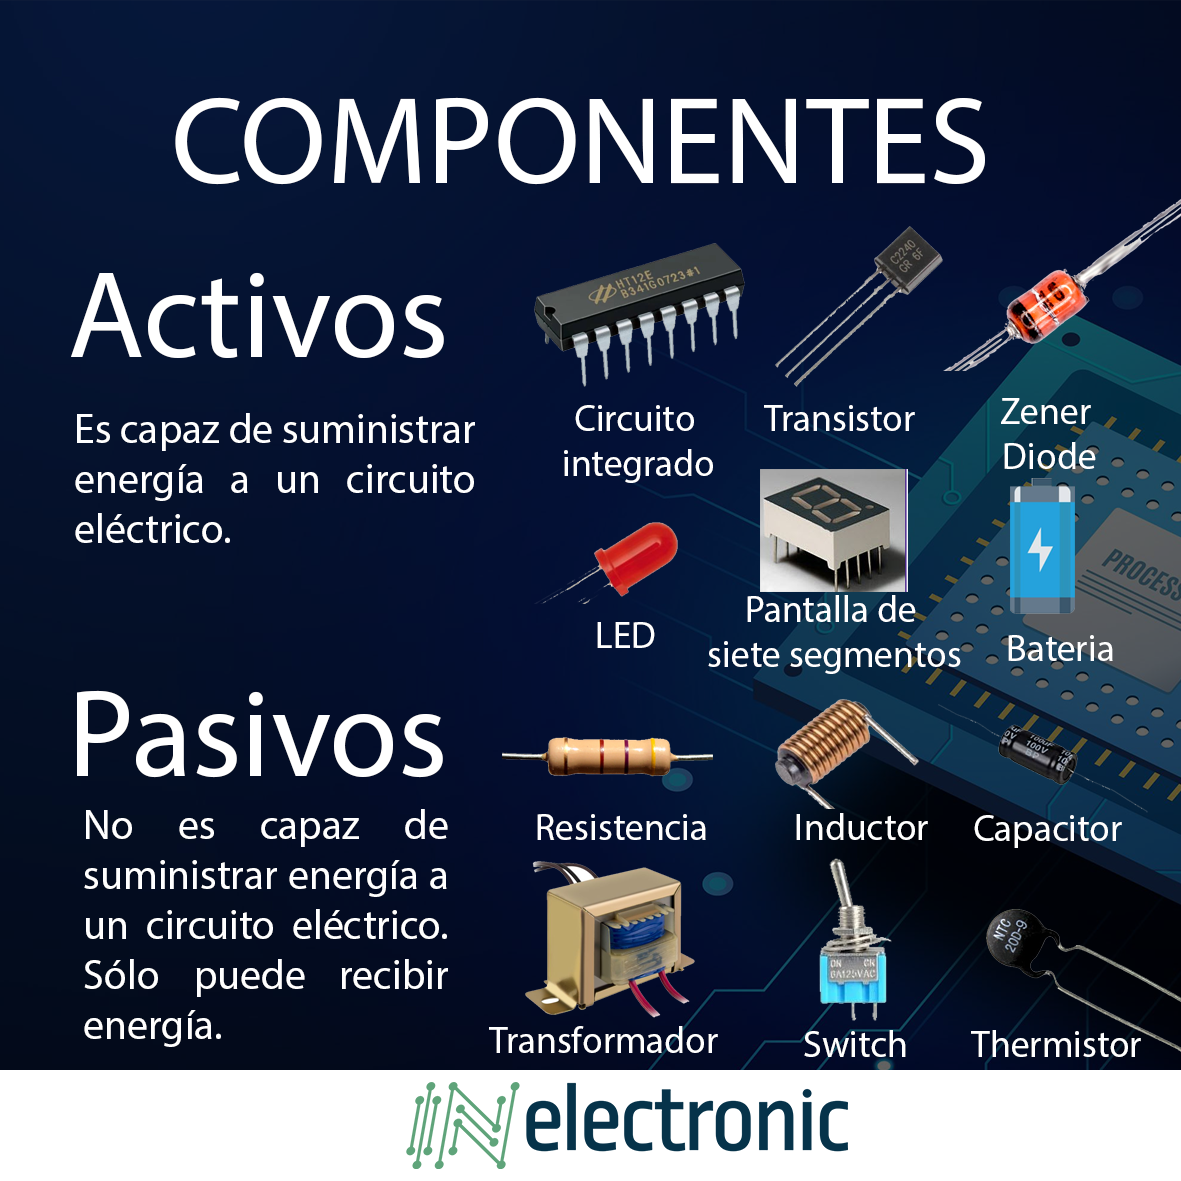 Componentes Electrónicos  ¿Qué son y tipos más usados?